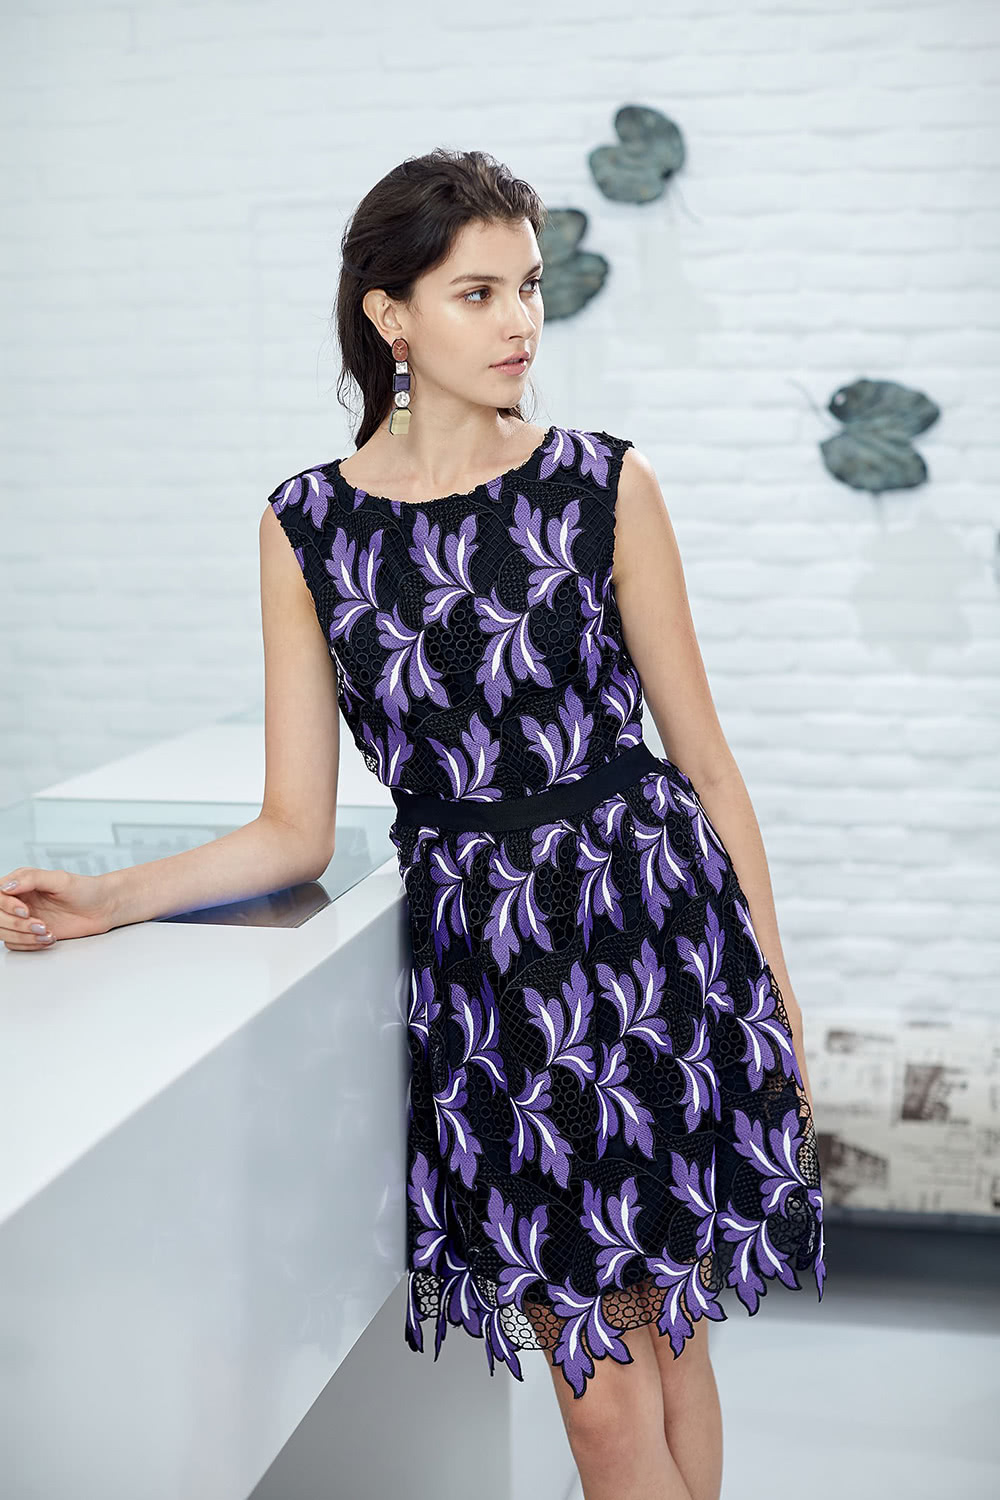 iROO 紫羅蘭刺繡華麗設計洋裝品牌優惠